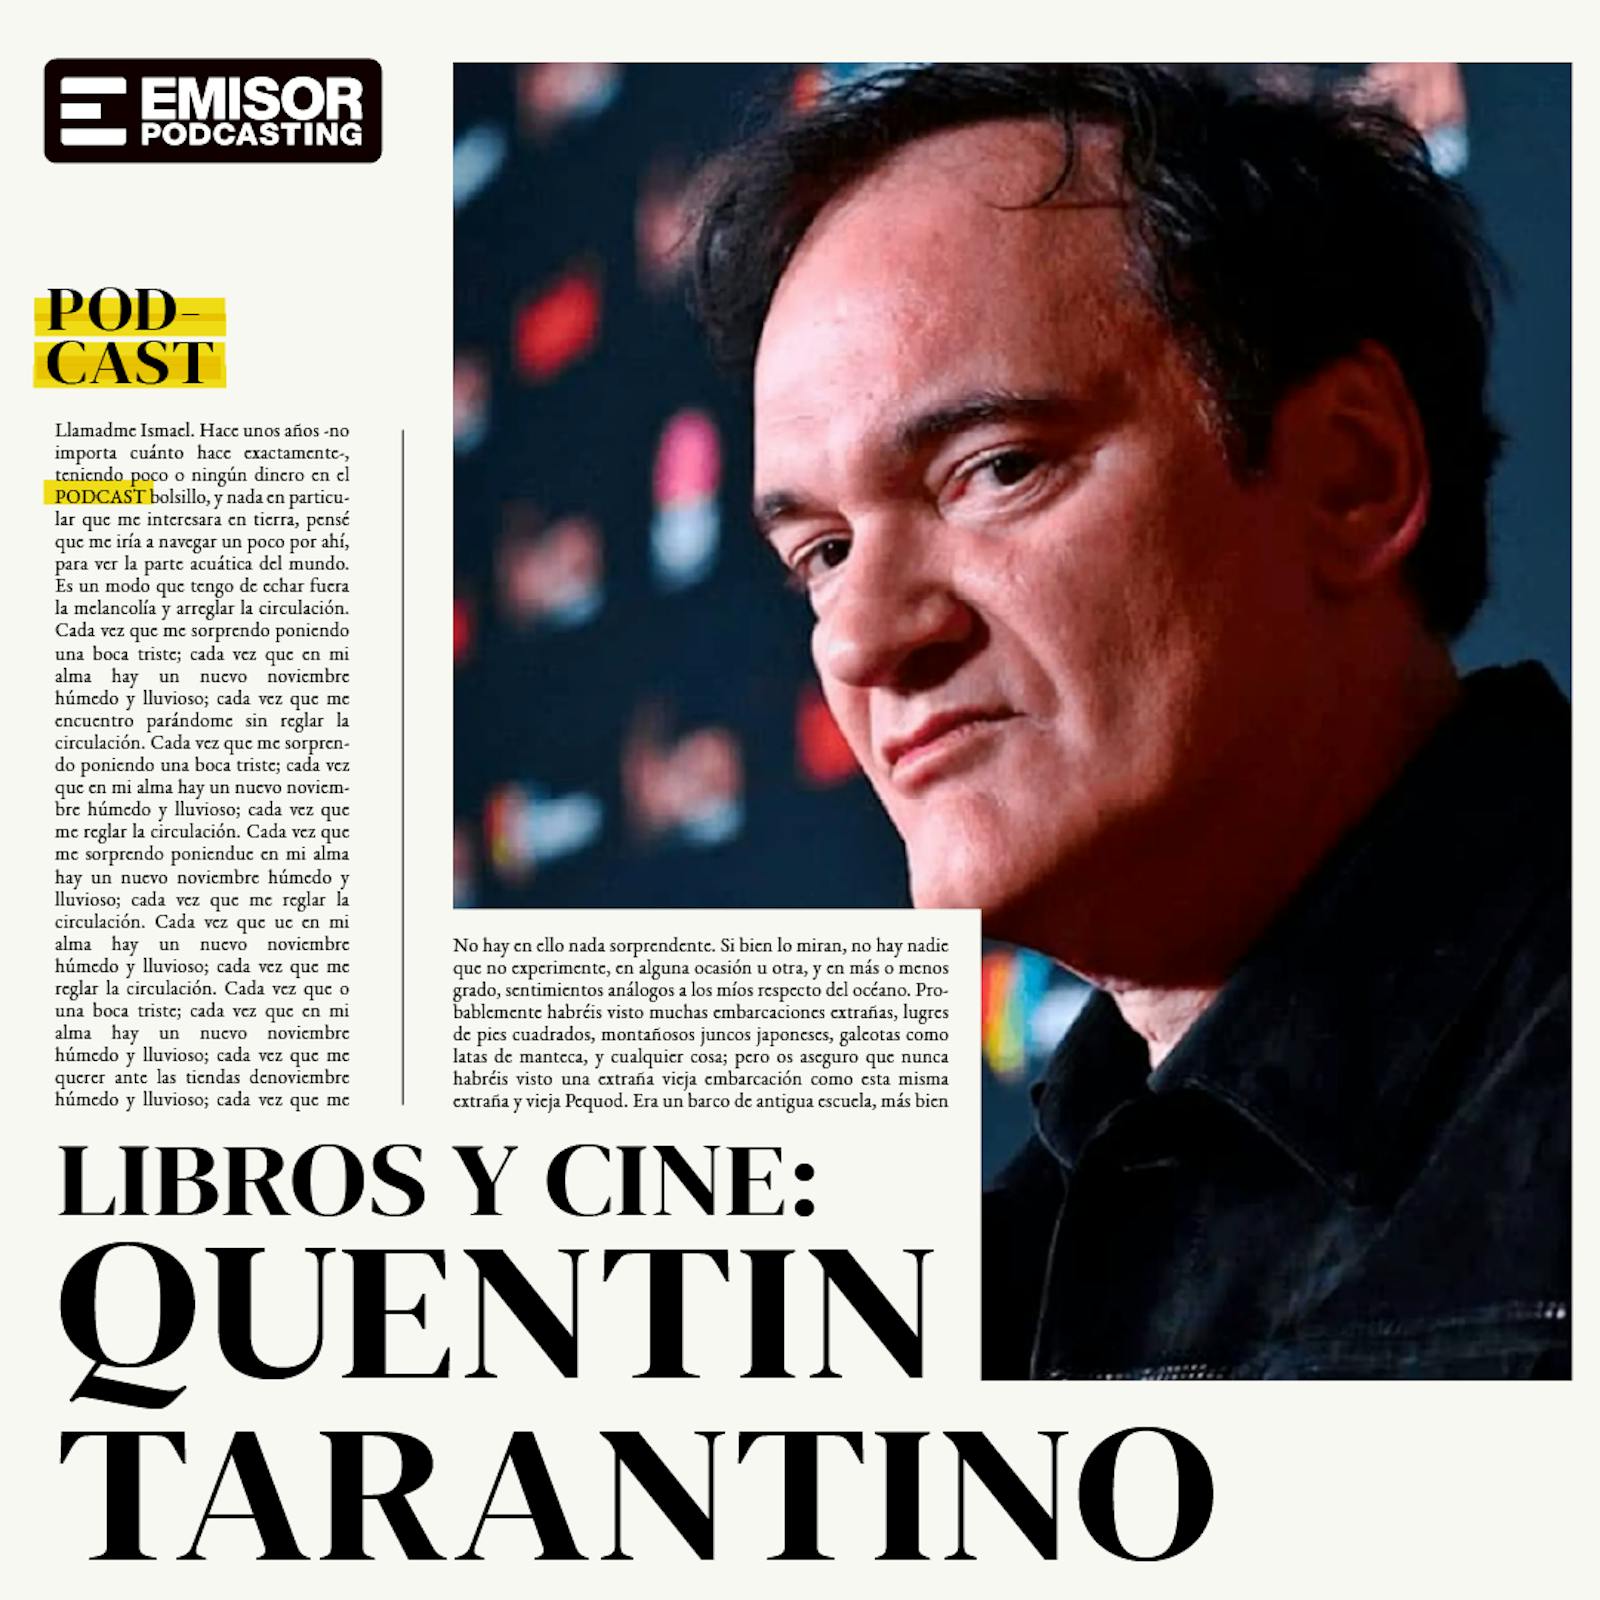 Libros y cine: Quentin Tarantino